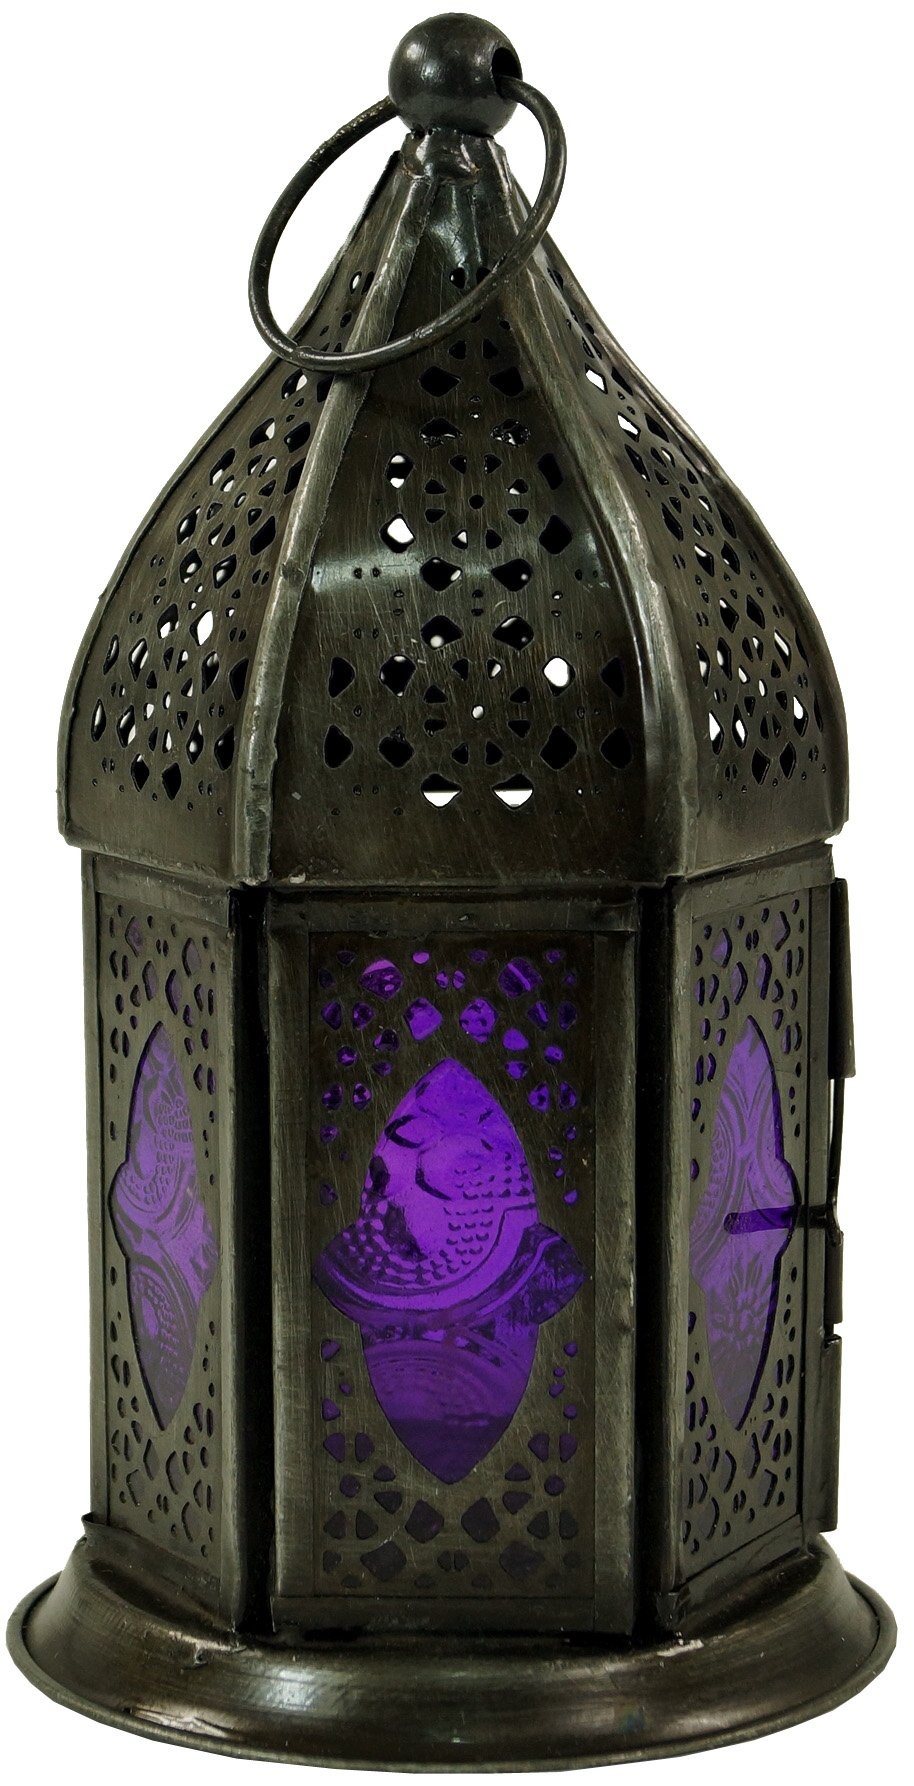 GURU SHOP Orientalische Metall/Glas Laterne in Marrokanischem Design, Windlicht, Lila, Farbe: Lila, 18x7x7 cm, Orientalische Laternen